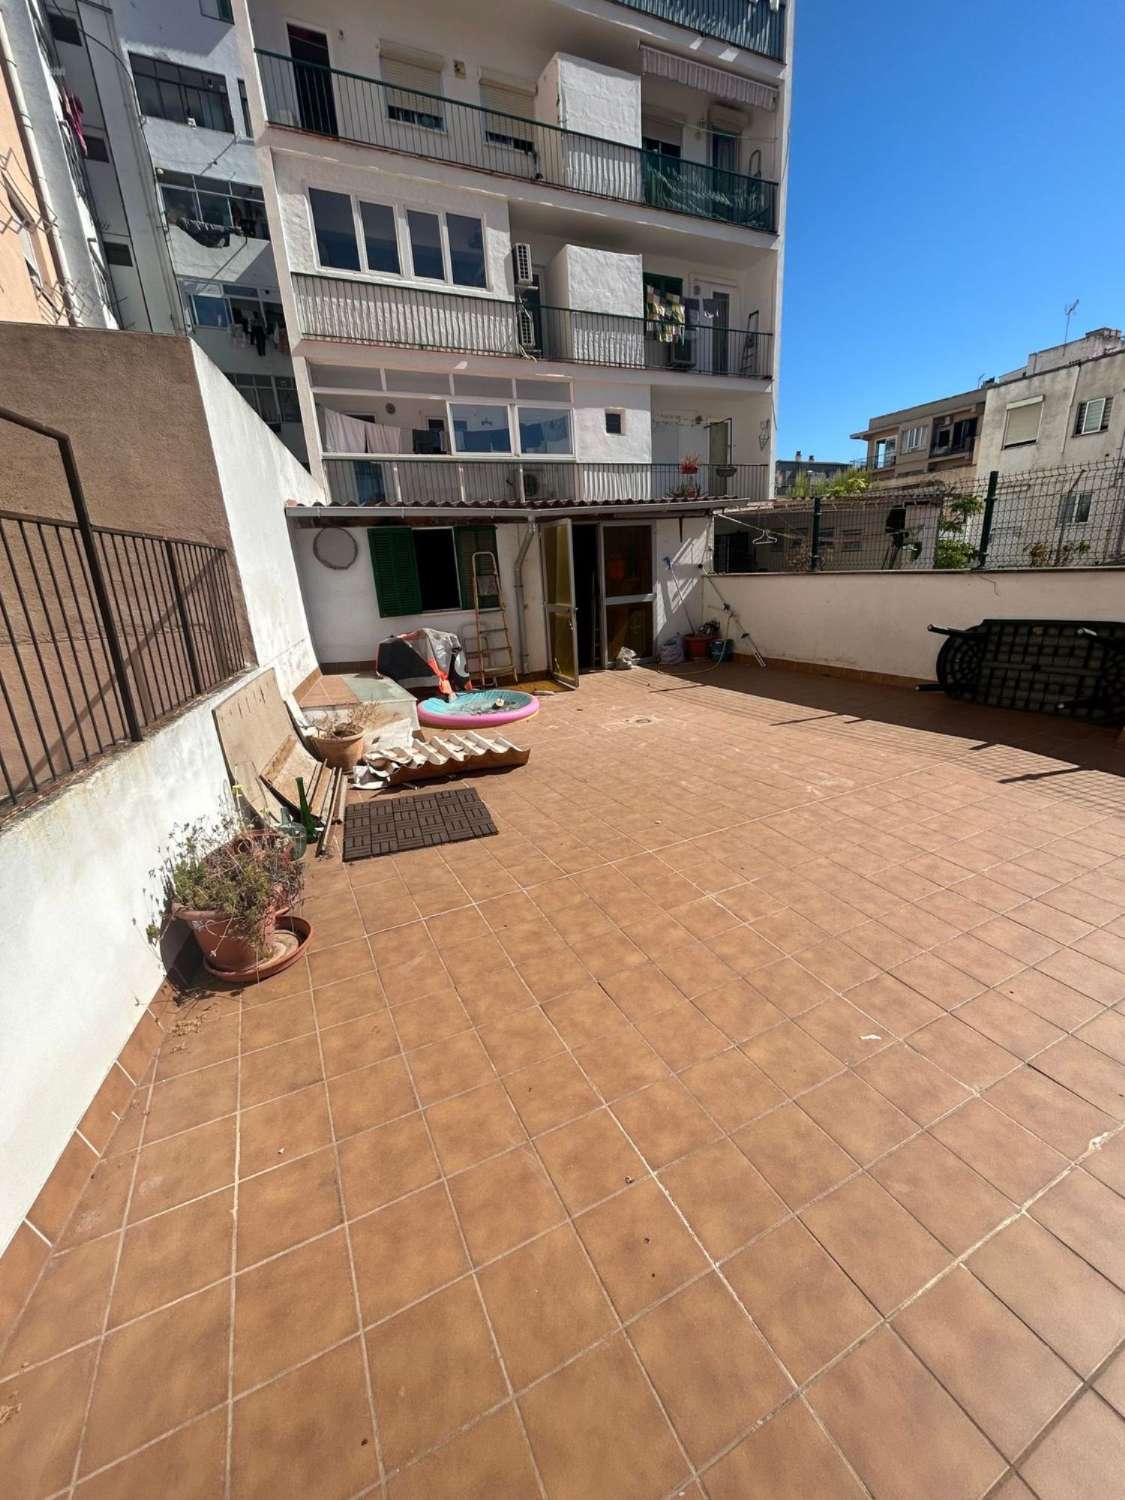 Geräumige, originelle Wohnung zum Verkauf in Pere Garau, mit Terrasse